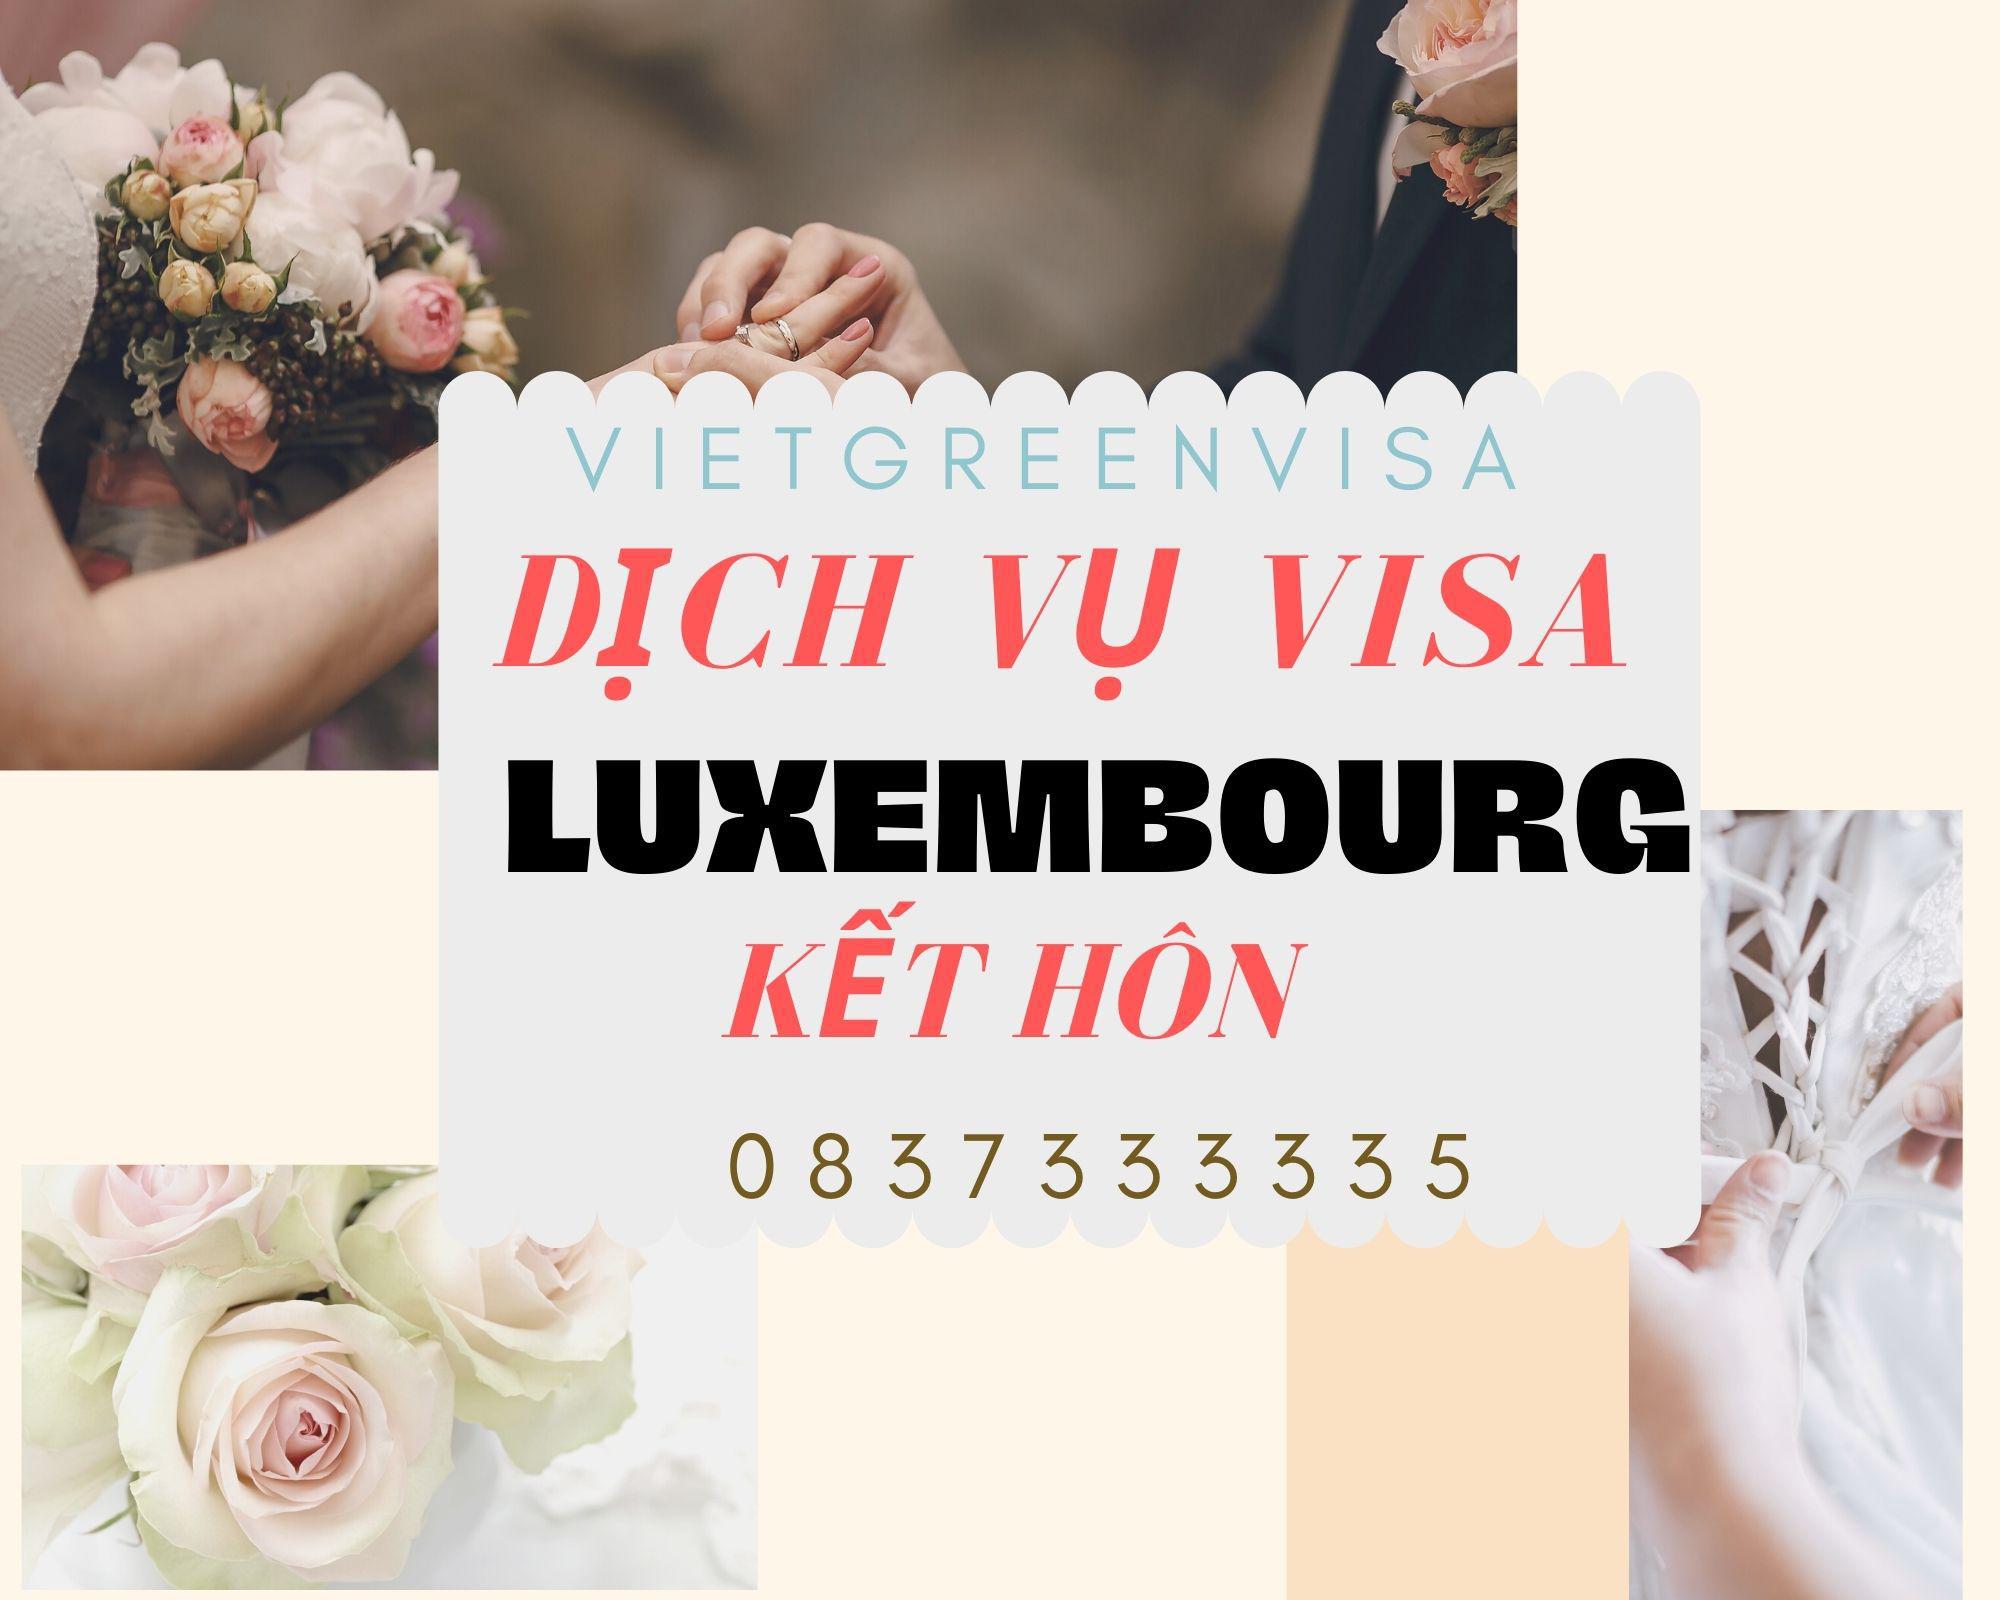 Hỗ trợ xin visa đi Luxembourg kết hôn 